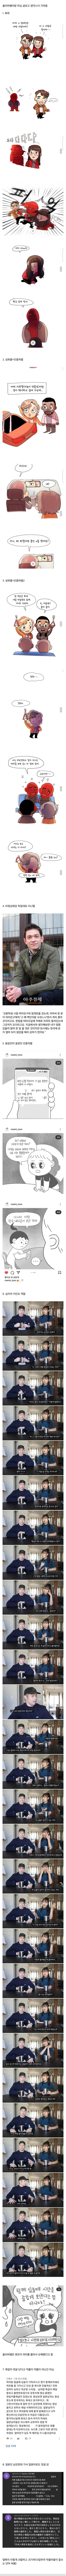 국제 커플인 한국 여자들과 그들의 남친들이 받는 악플&폭력.jpg | 인스티즈